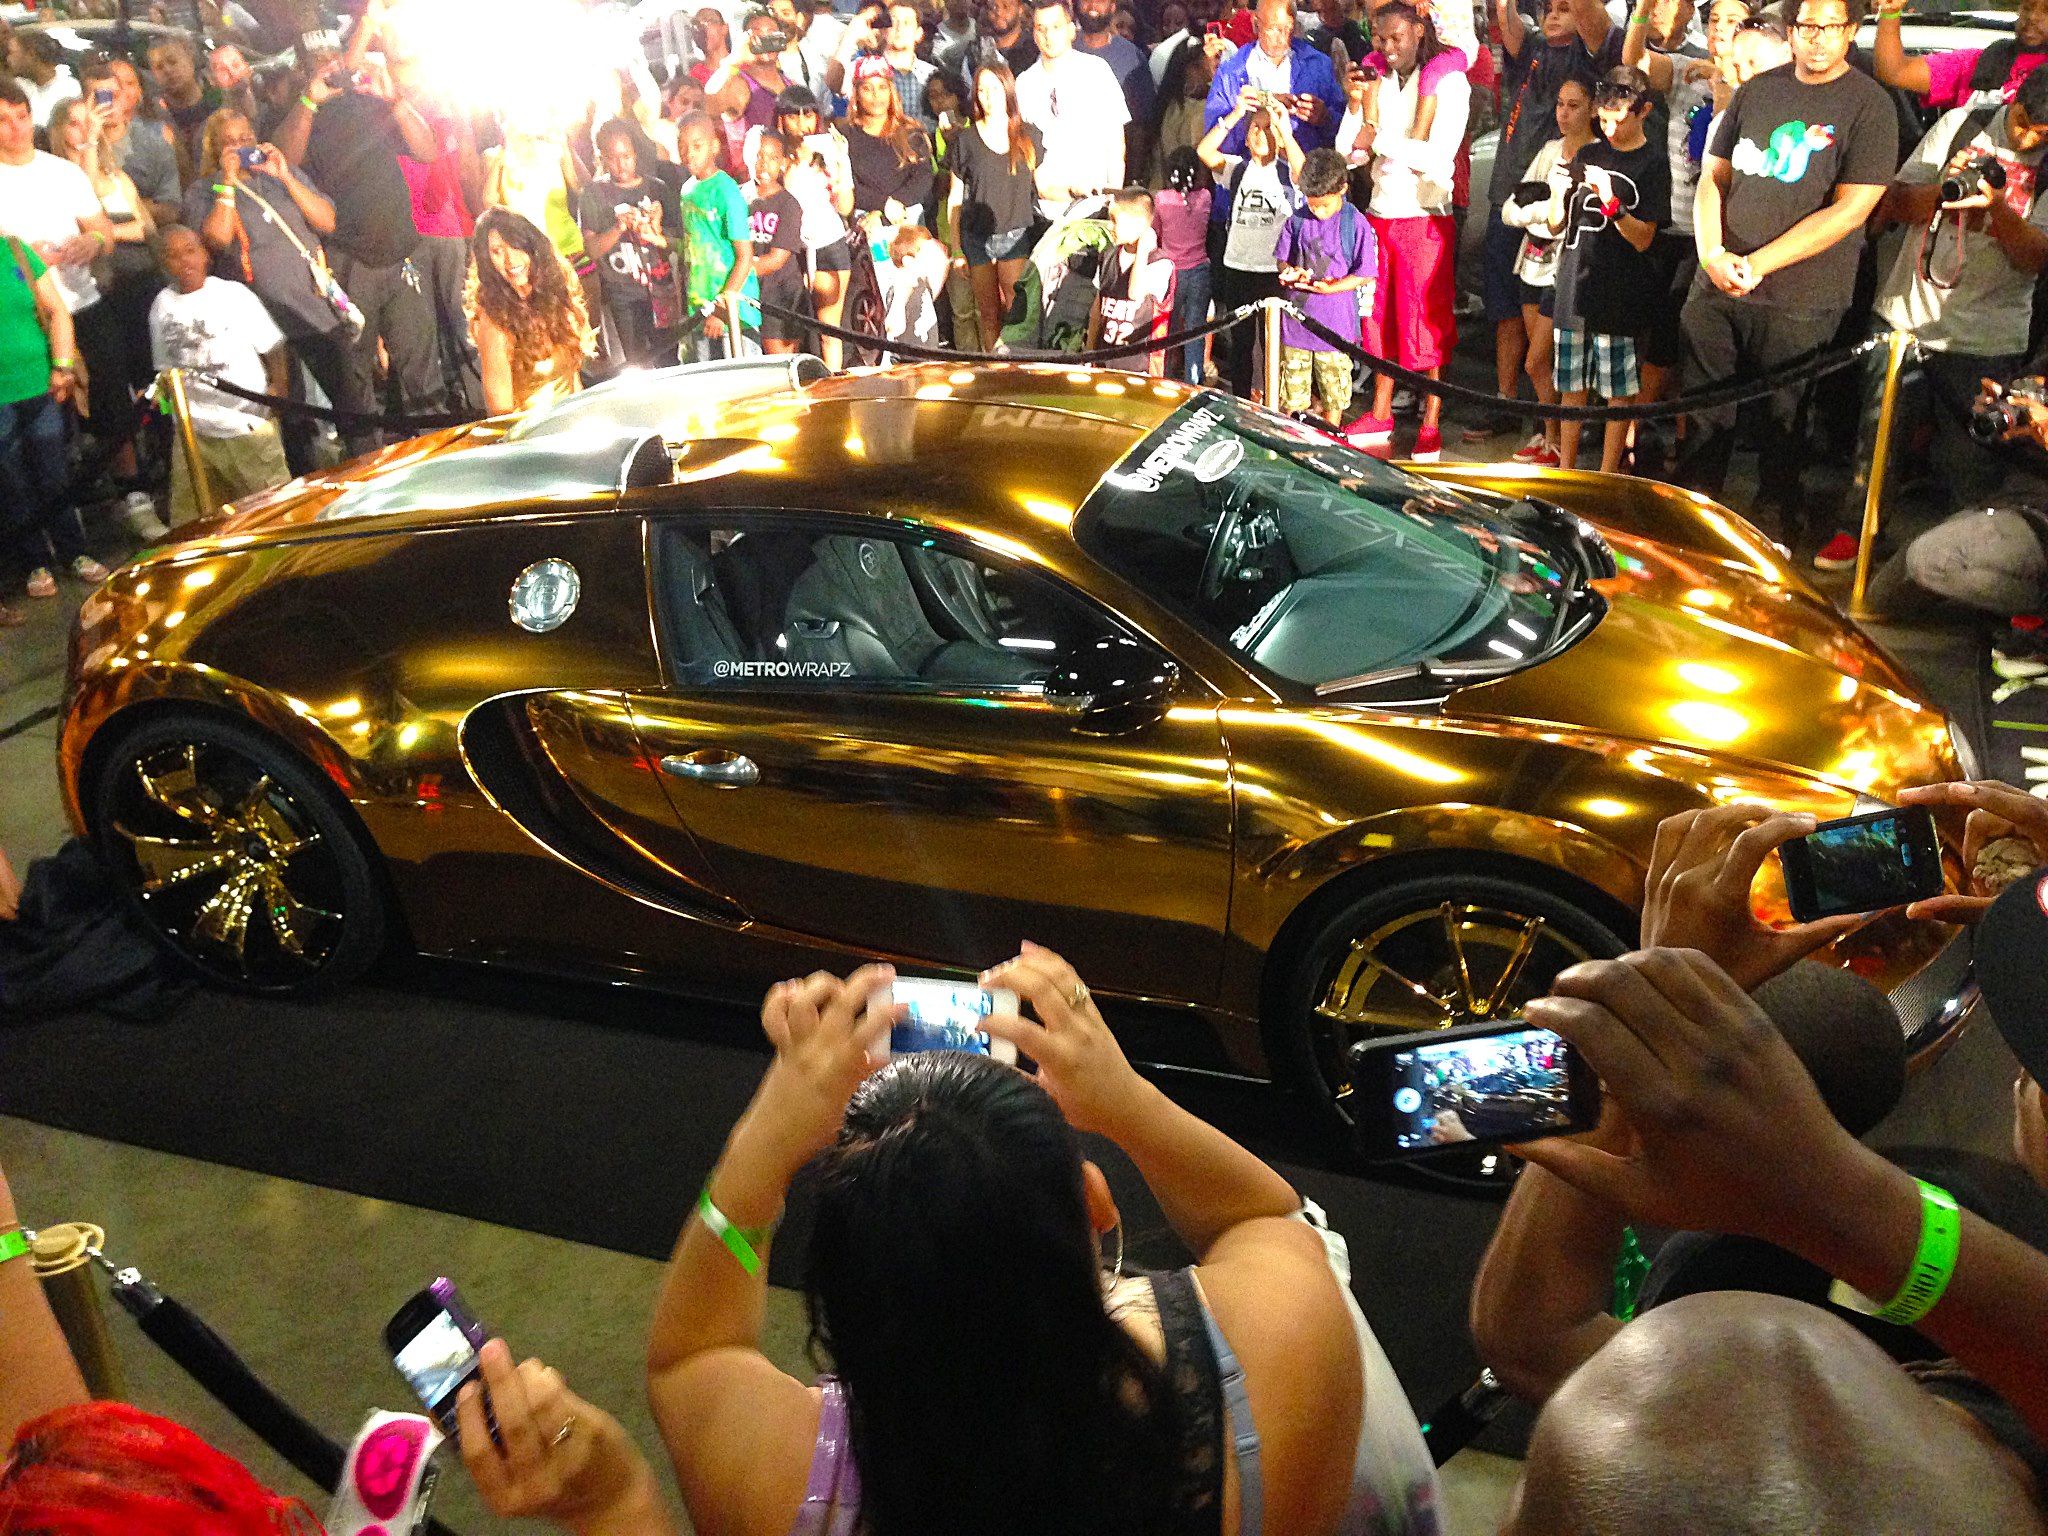 Flo Rida’s Gold Bugatti Veyron at a car show